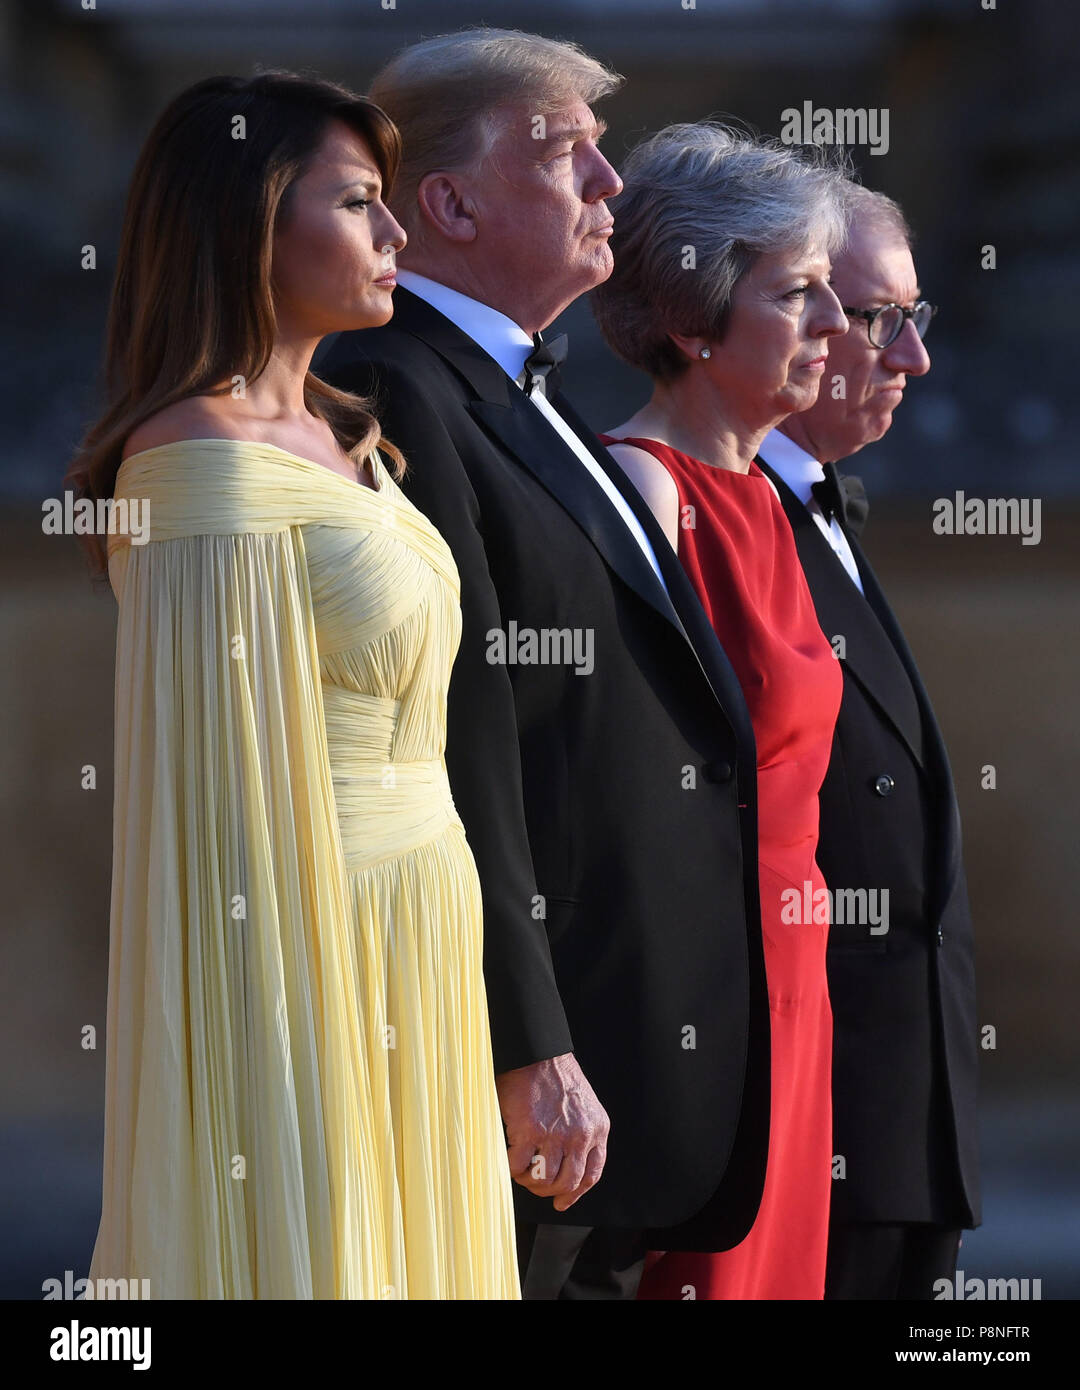 Alternativen ANBAU US-Präsident Donald Trump und First Lady der USA Melania Trump stand mit Premierminister Theresa May und ihr Ehemann Philip kann bei Blenheim Palace, Oxfordshire, vor ein Abendessen als Teil seines Besuchs in Großbritannien. Stockfoto